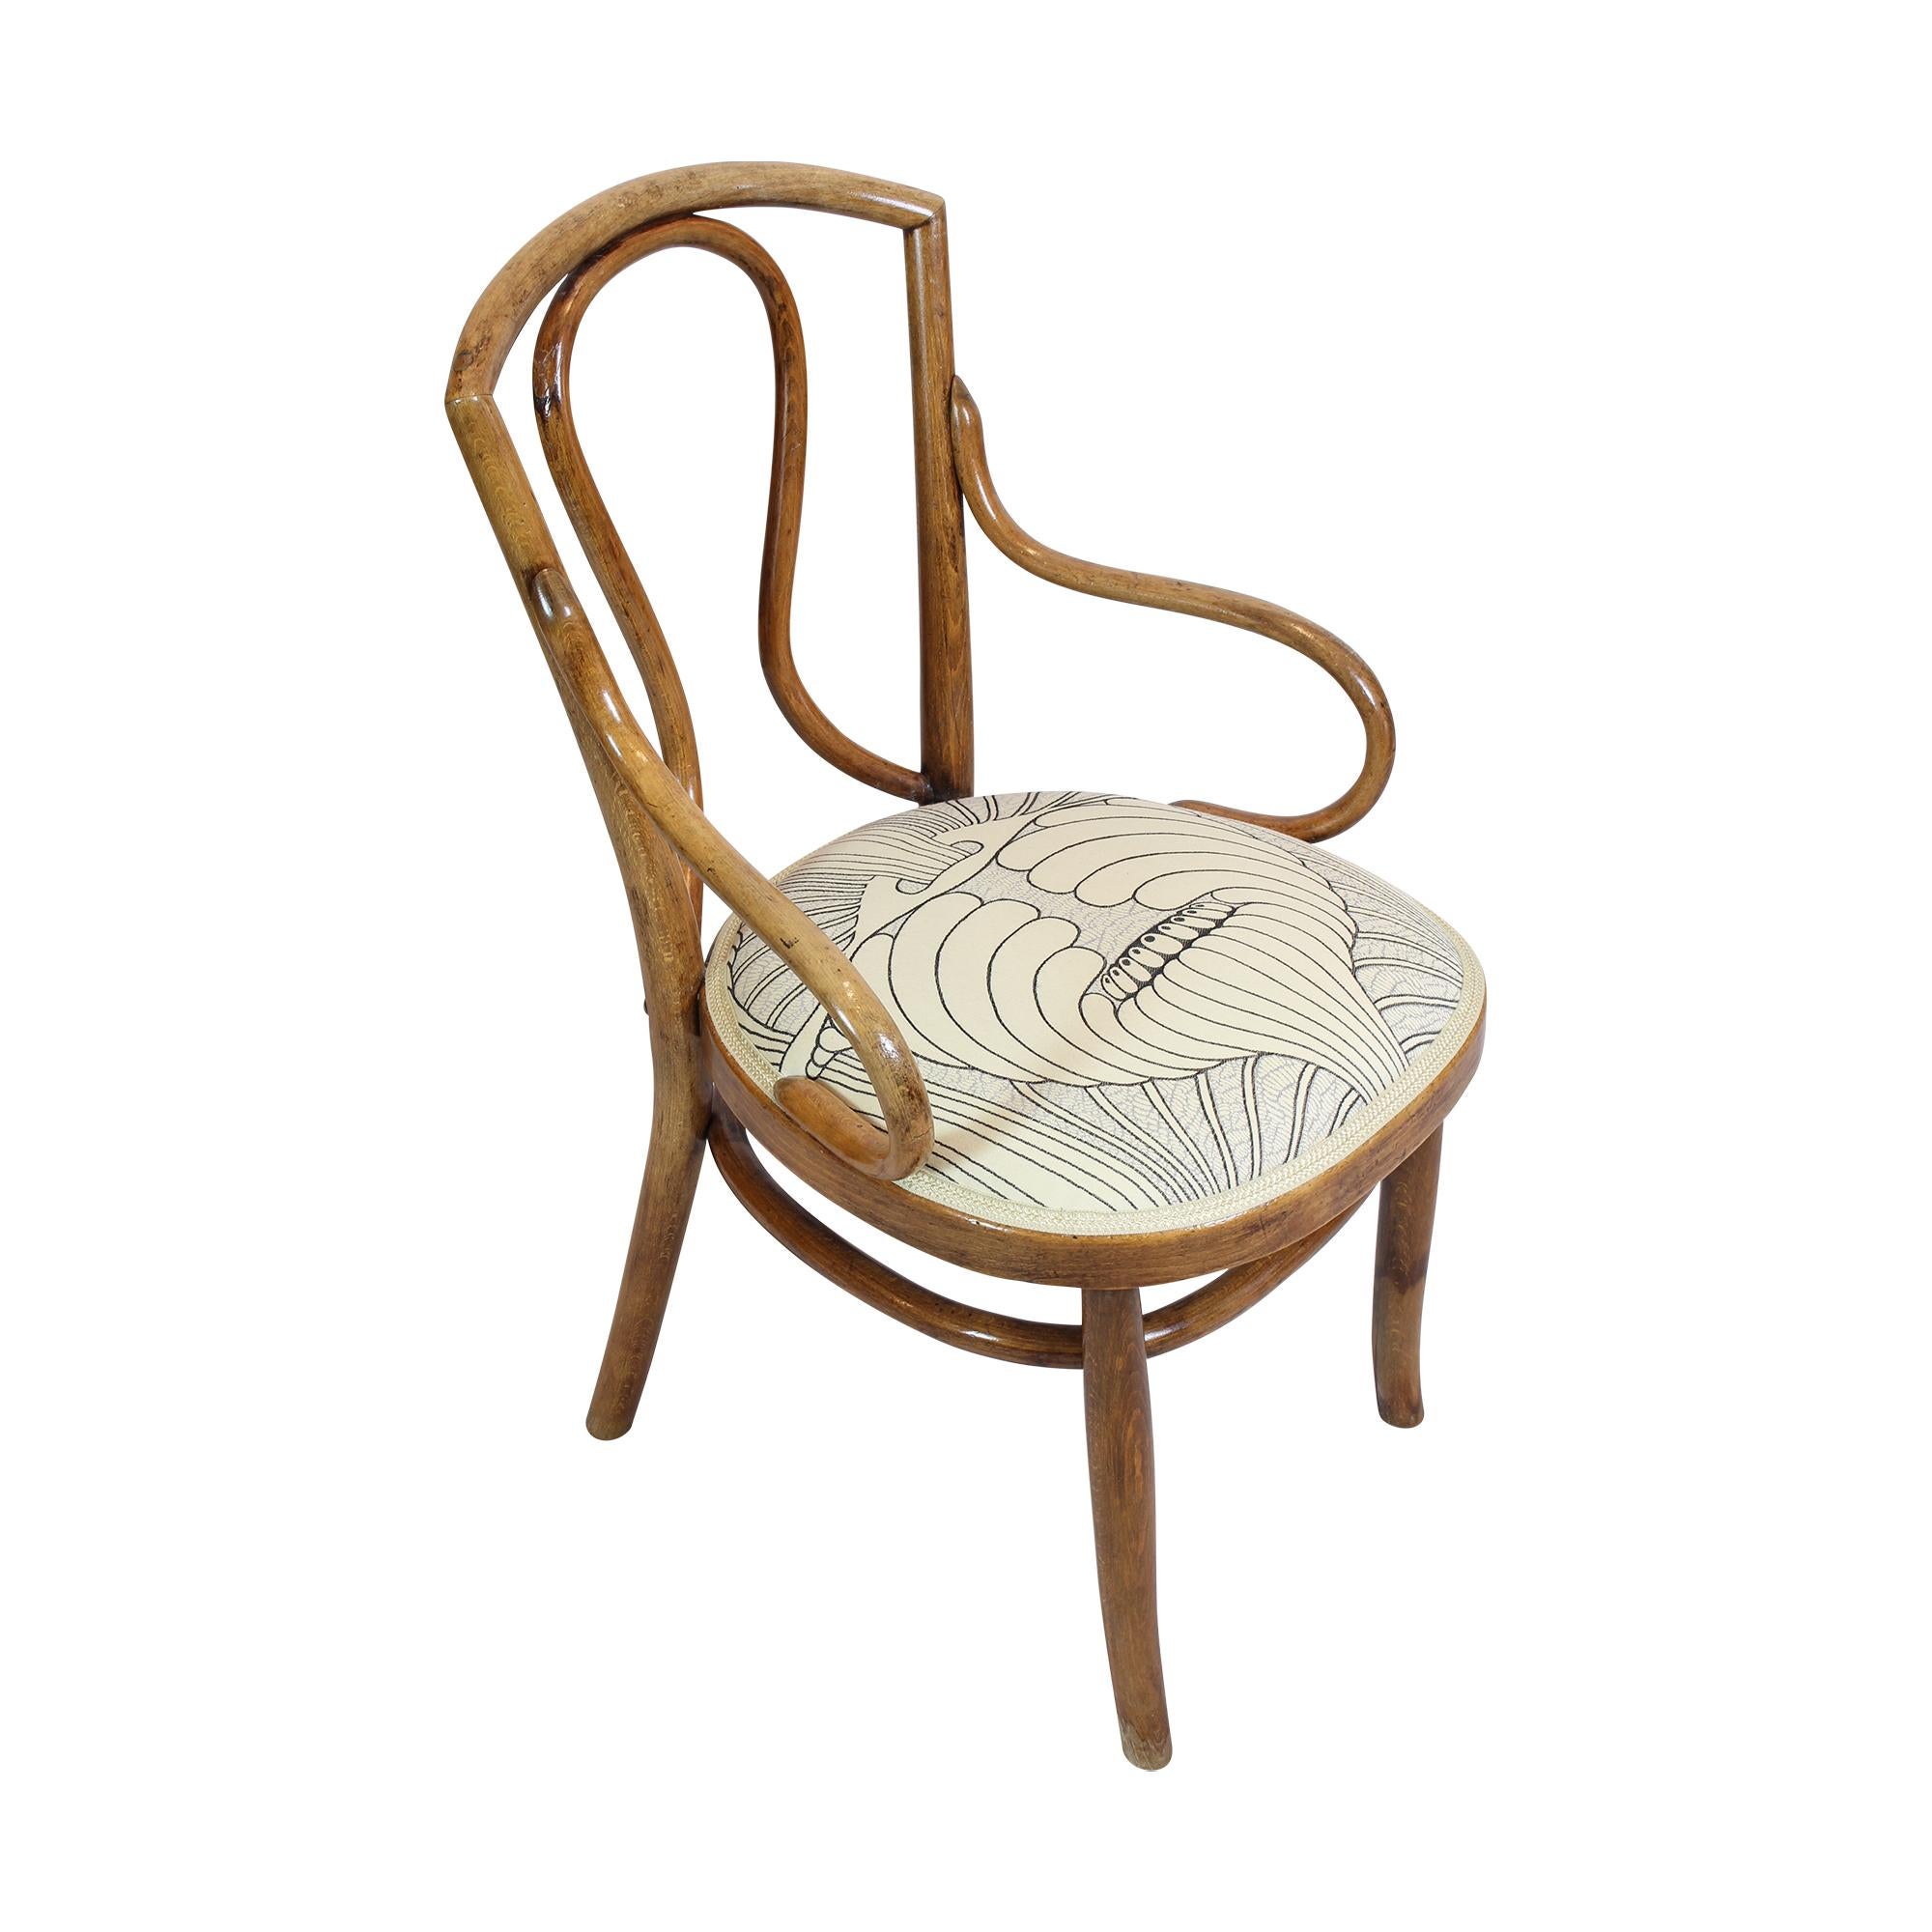 Der Jugendstilsessel wurde aus Bugholz gefertigt. Der Sitz wurde neu gepolstert und mit einem sehr schönen Jugendstilstoff bezogen.  Der Stuhl erinnert an Thonet-Stühle, aber es ist kein Label oder Stempel zu sehen. Der Stuhl ist in einem guten